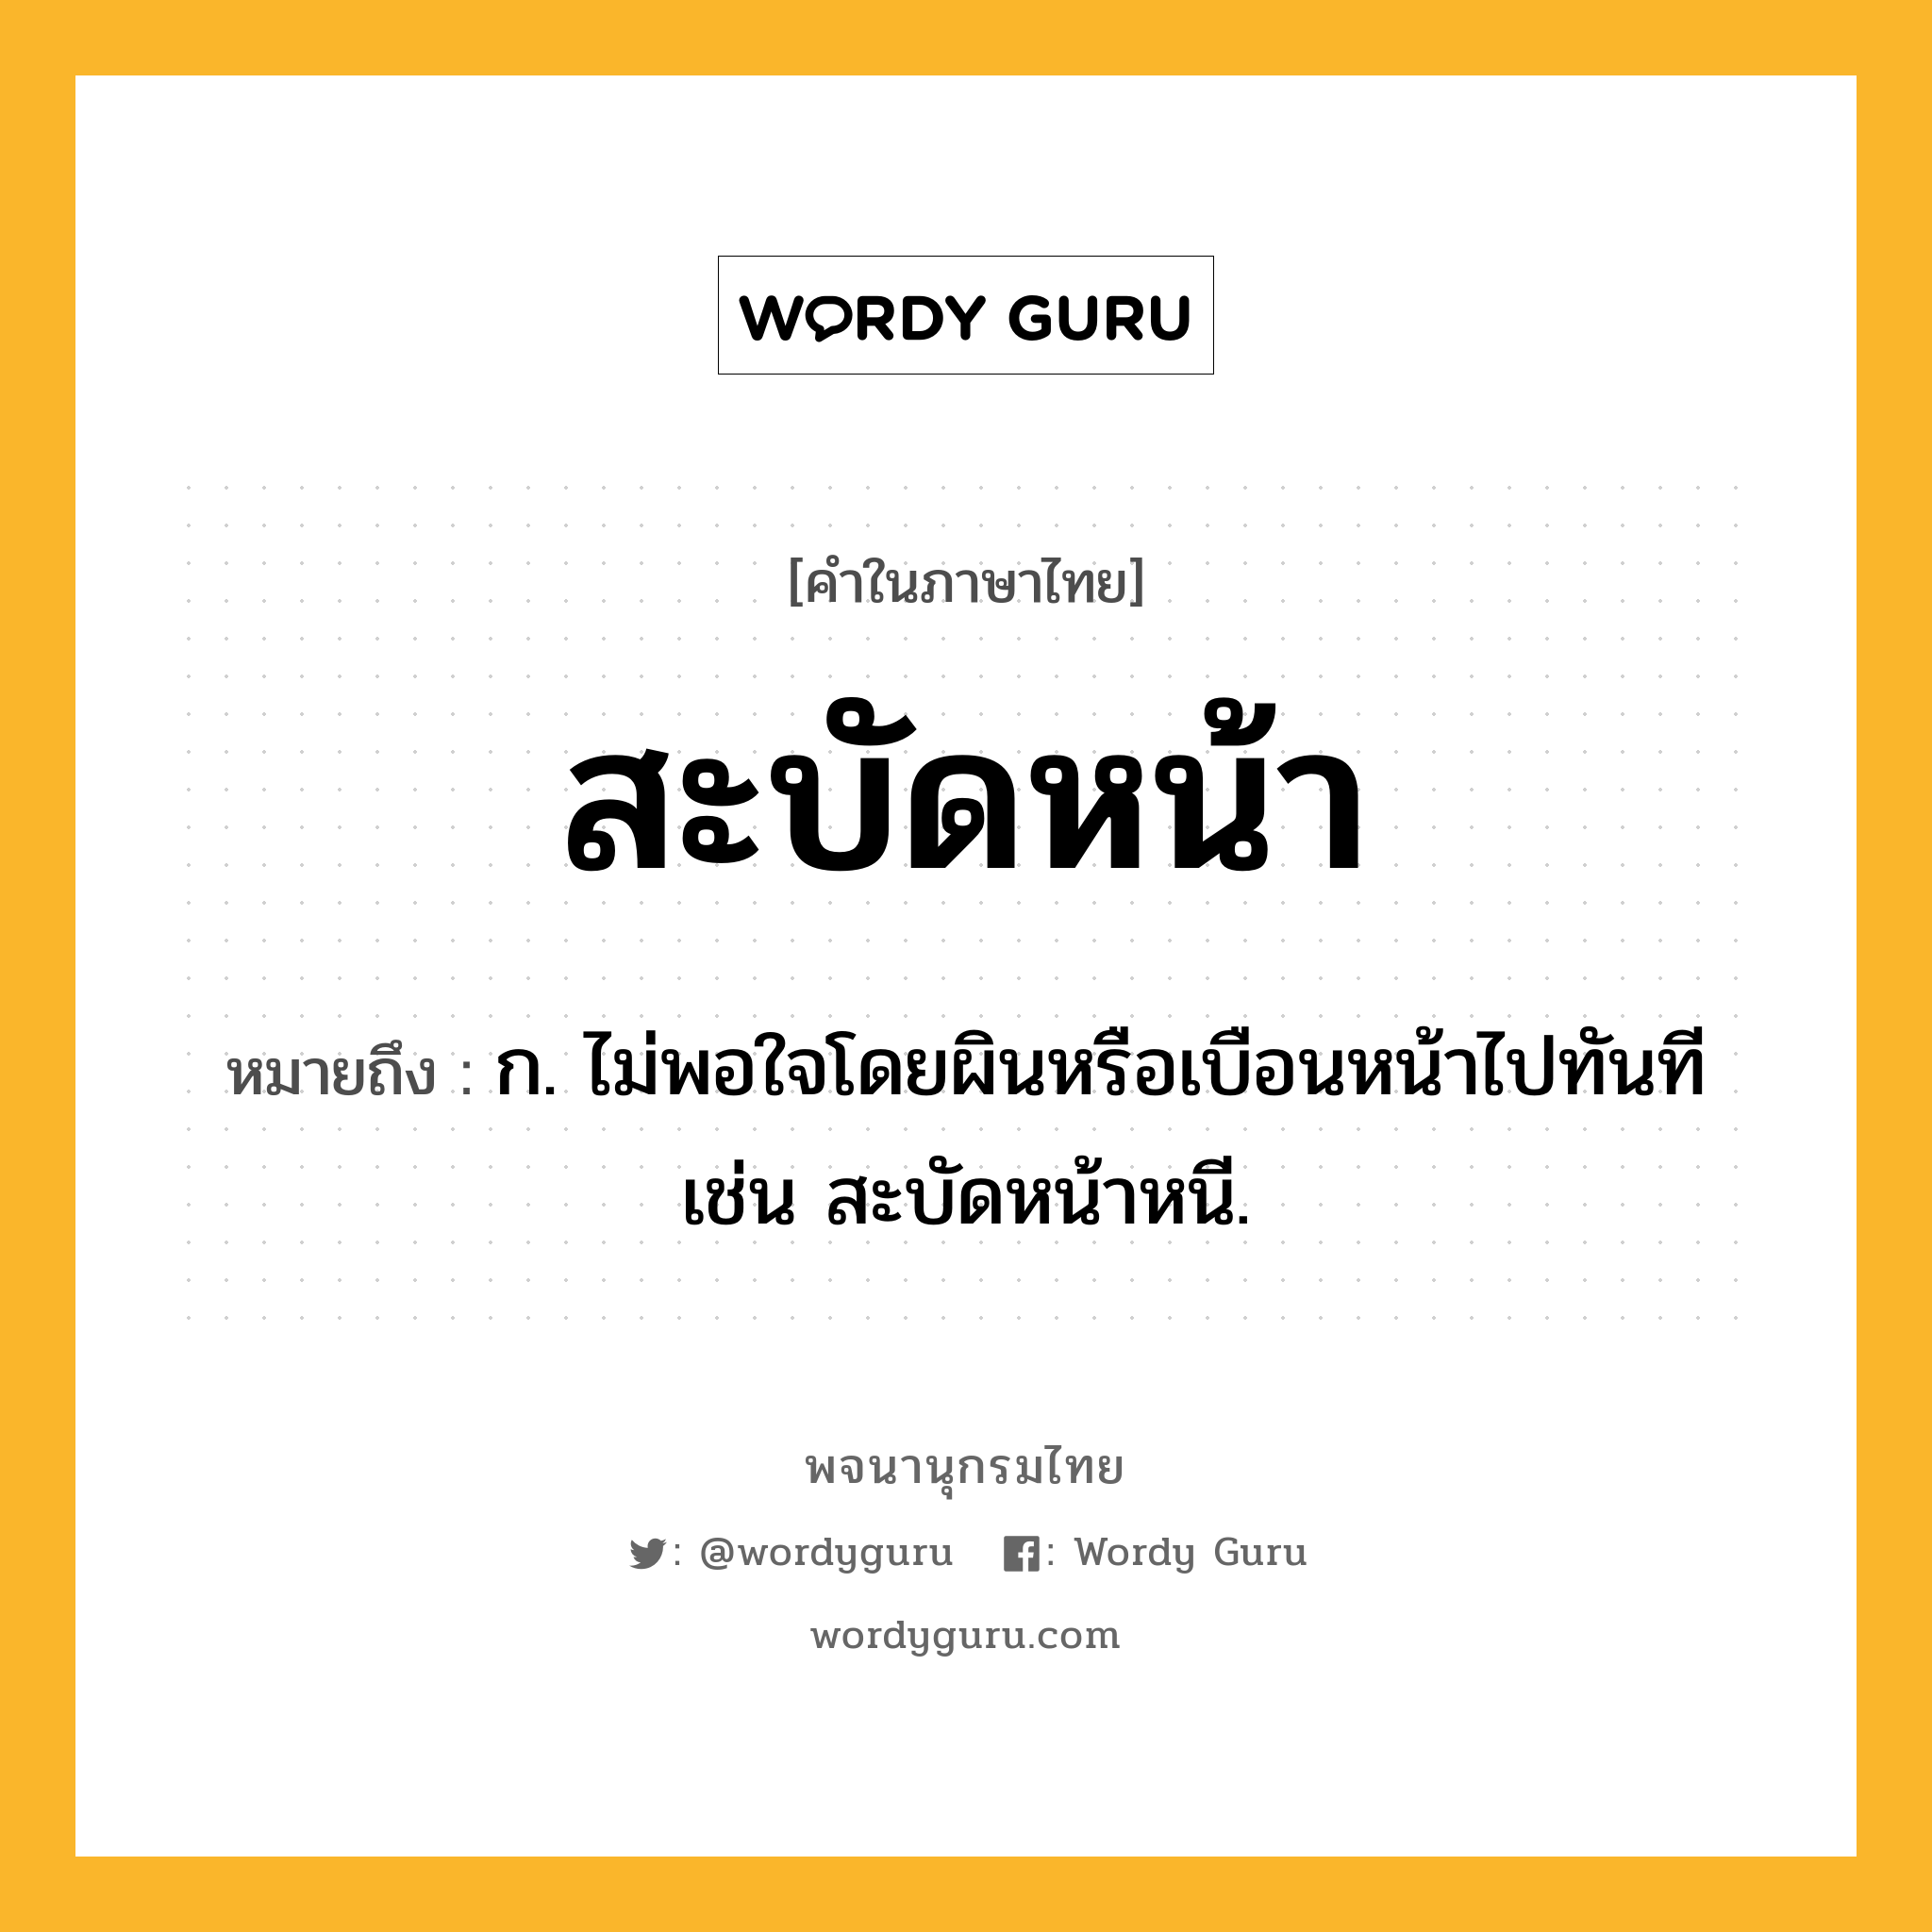 สะบัดหน้า หมายถึงอะไร?, คำในภาษาไทย สะบัดหน้า หมายถึง ก. ไม่พอใจโดยผินหรือเบือนหน้าไปทันที เช่น สะบัดหน้าหนี.